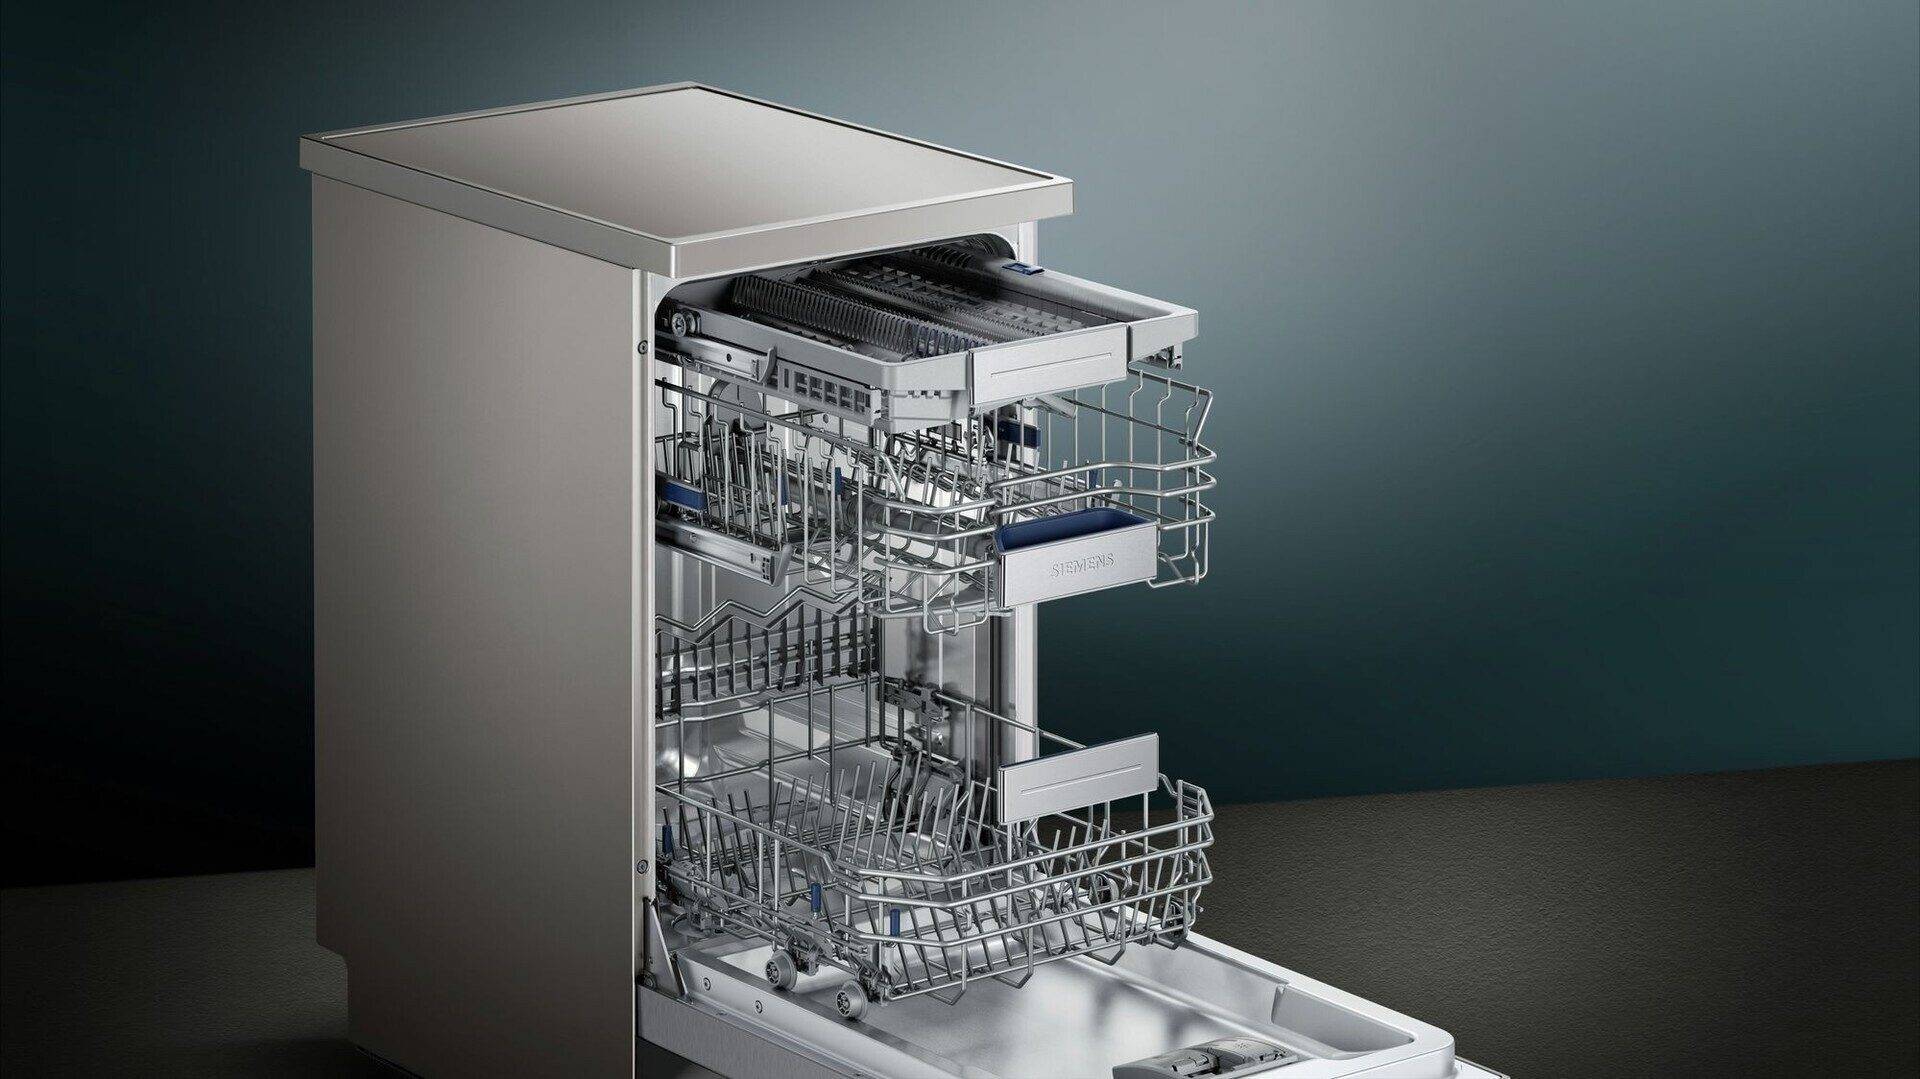 Рейтинг встраиваемых посудомоечных машин 2021-2022 года: топ-12 лучших моделей и какую выбрать